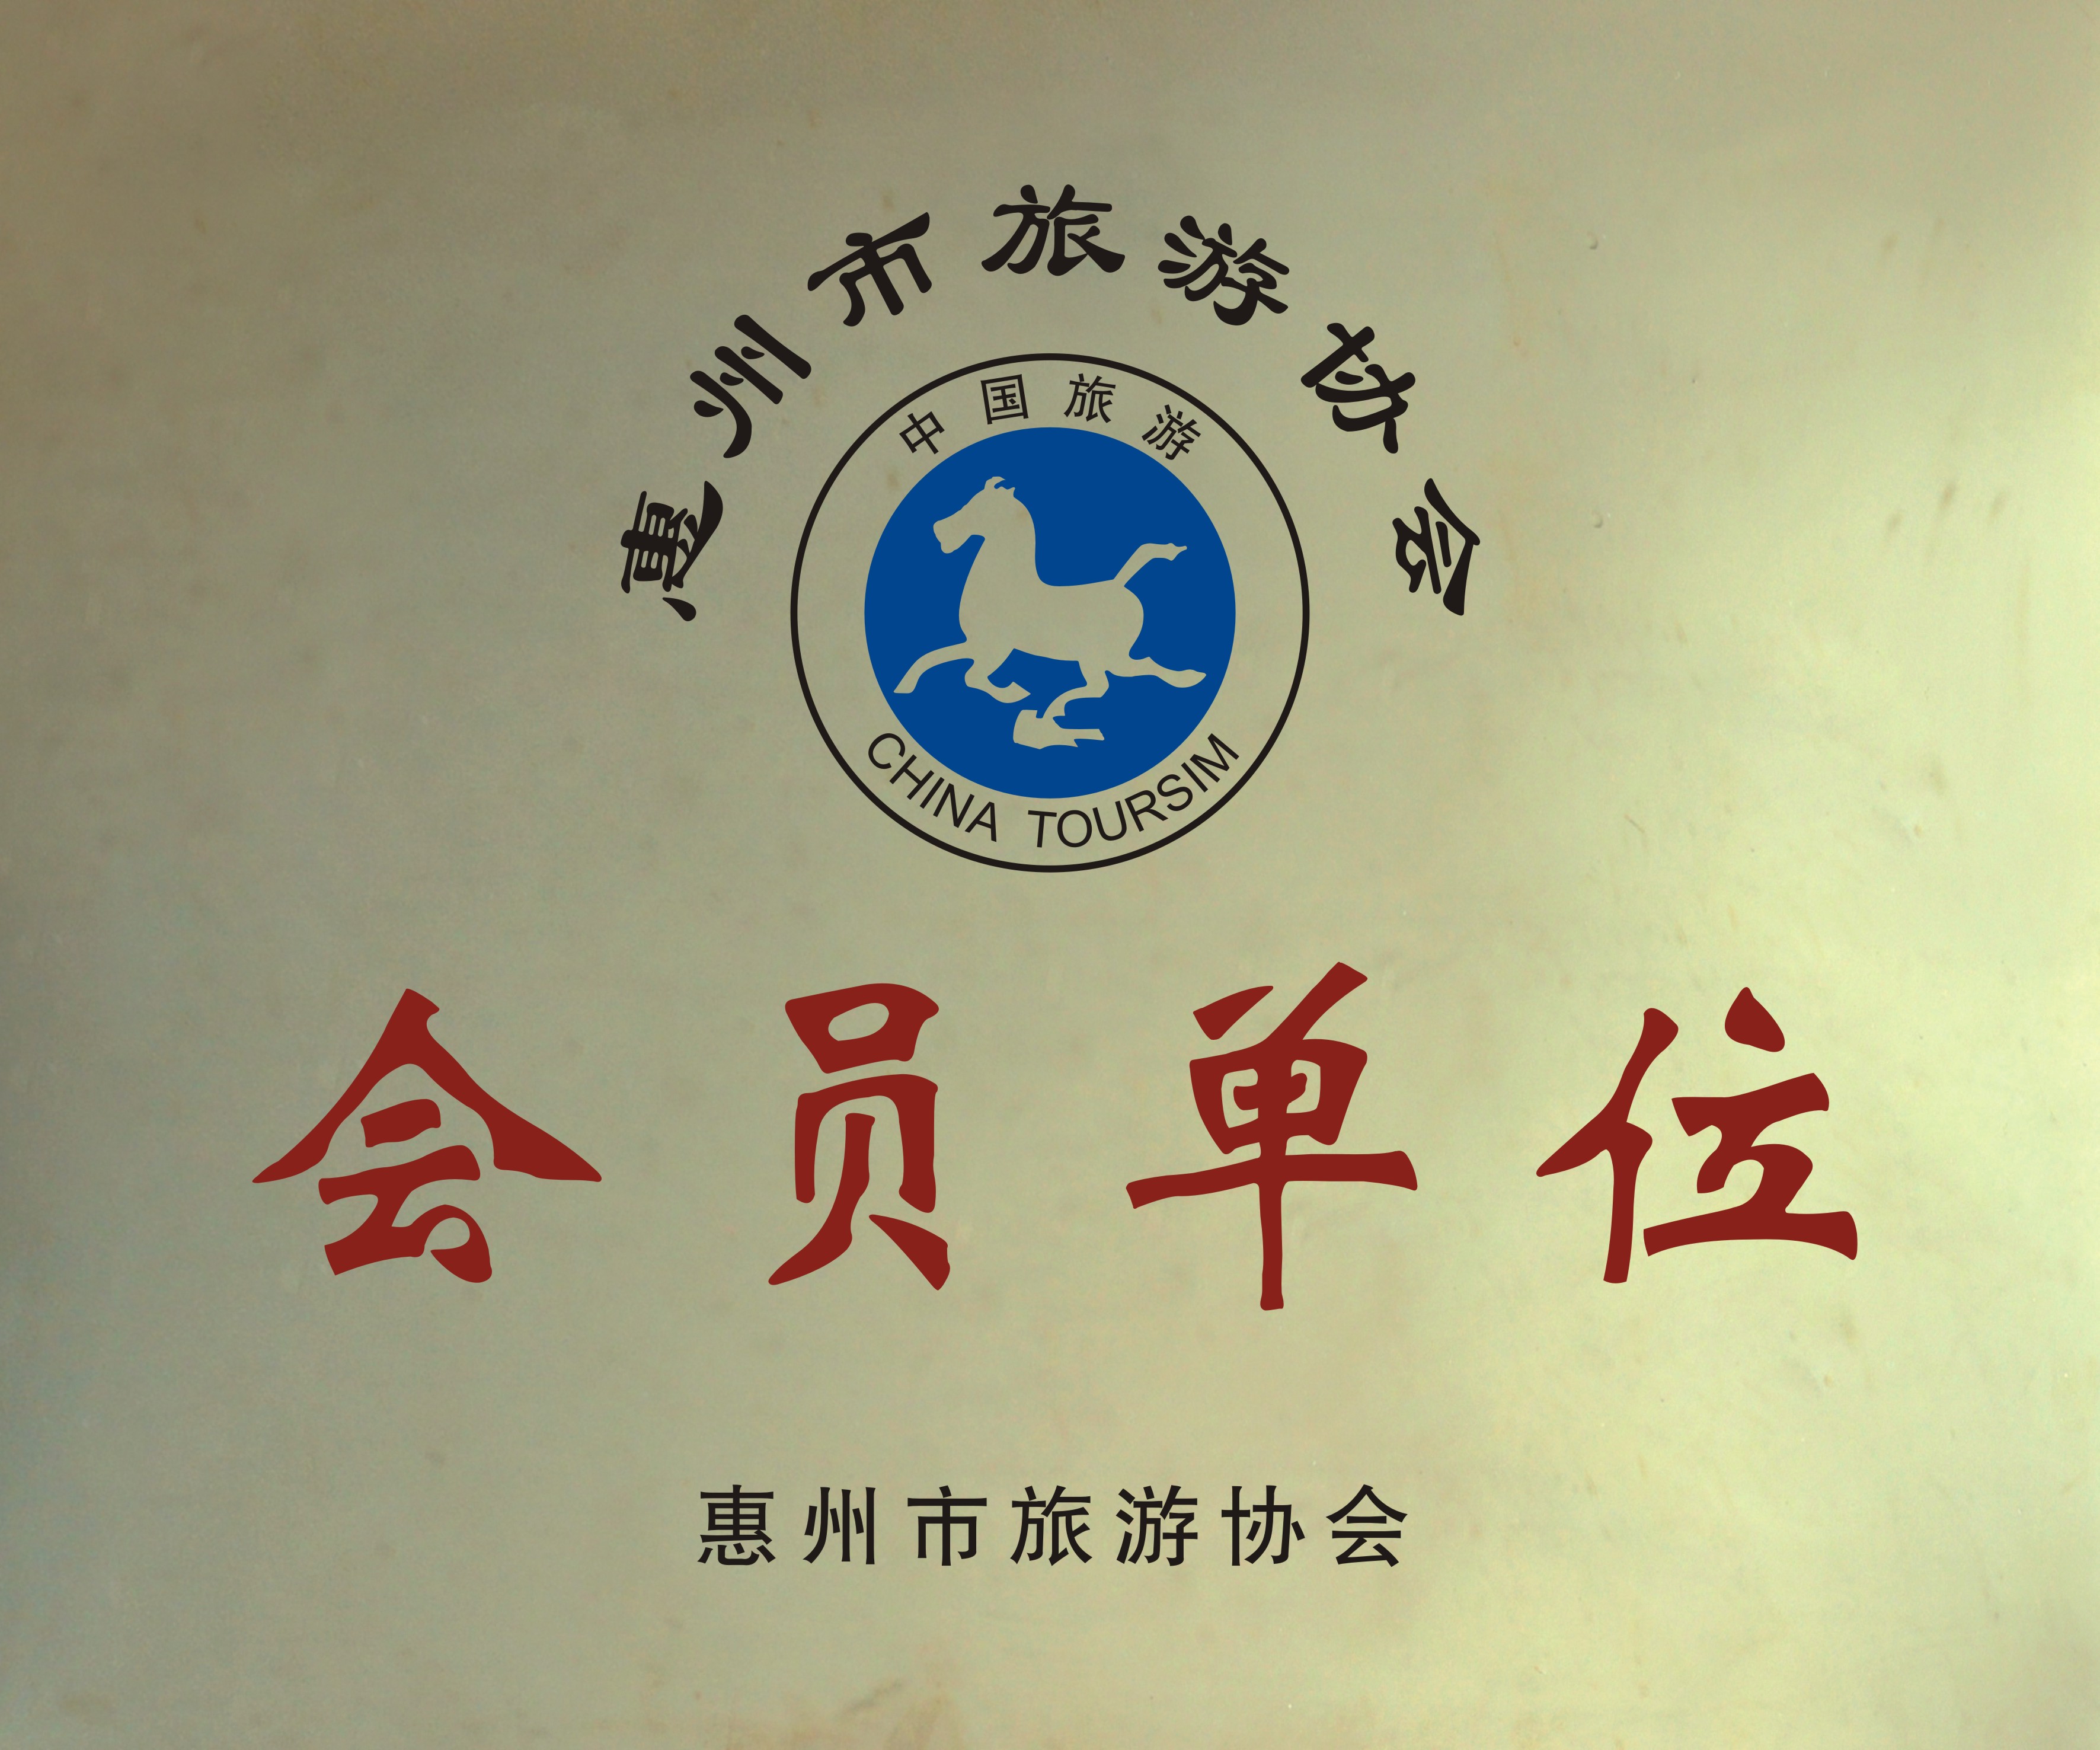 惠州市旅游協會會員單位